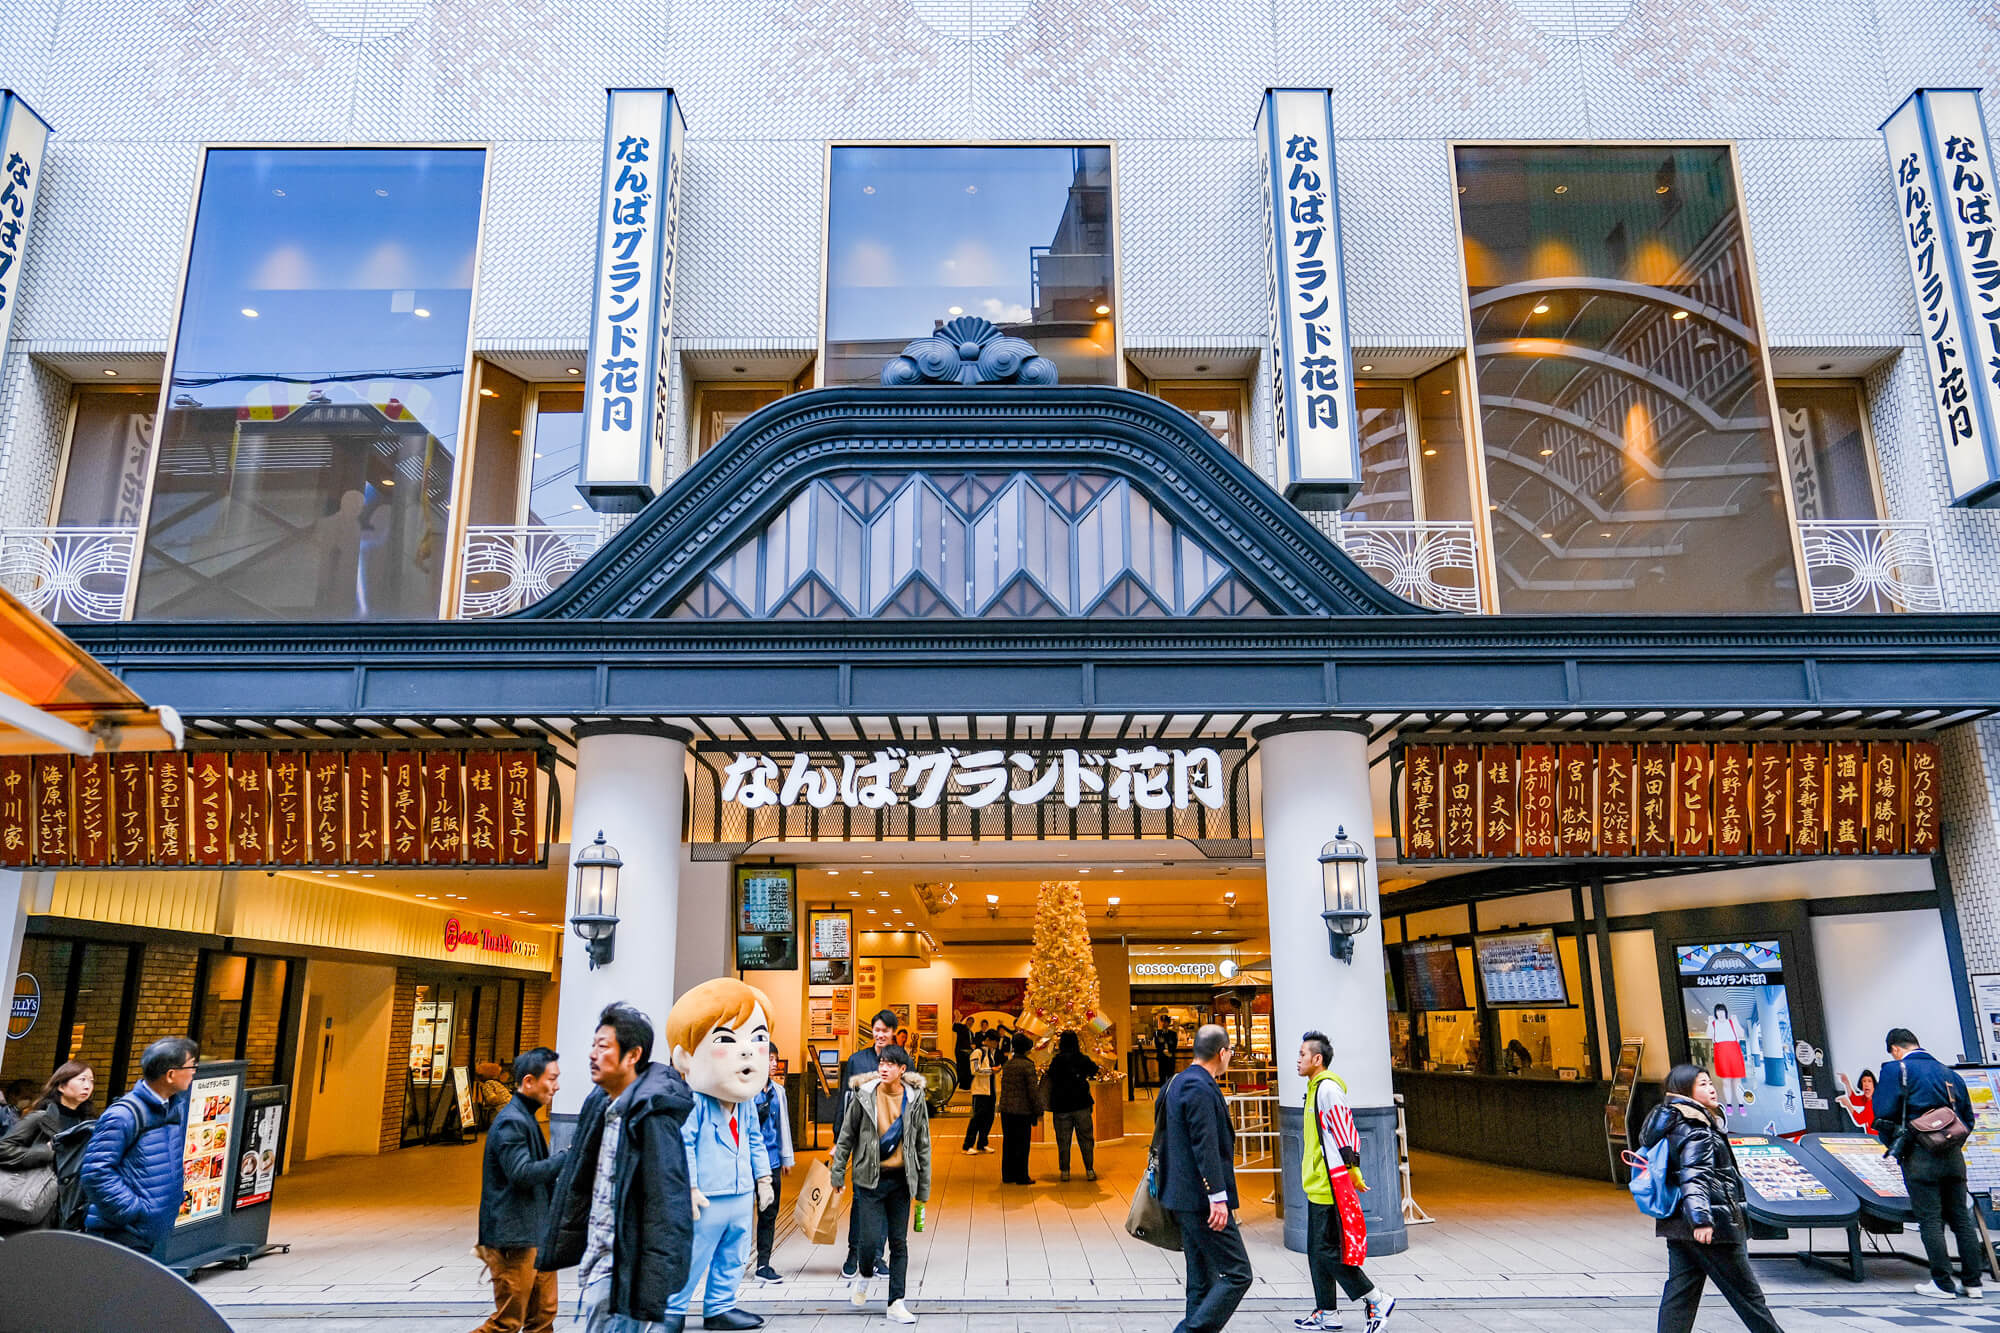 爆笑間違いなし お笑いの聖地大阪で行っておきたい吉本の劇場とは クリエイティブな旅を作るメディア Neo Osaka